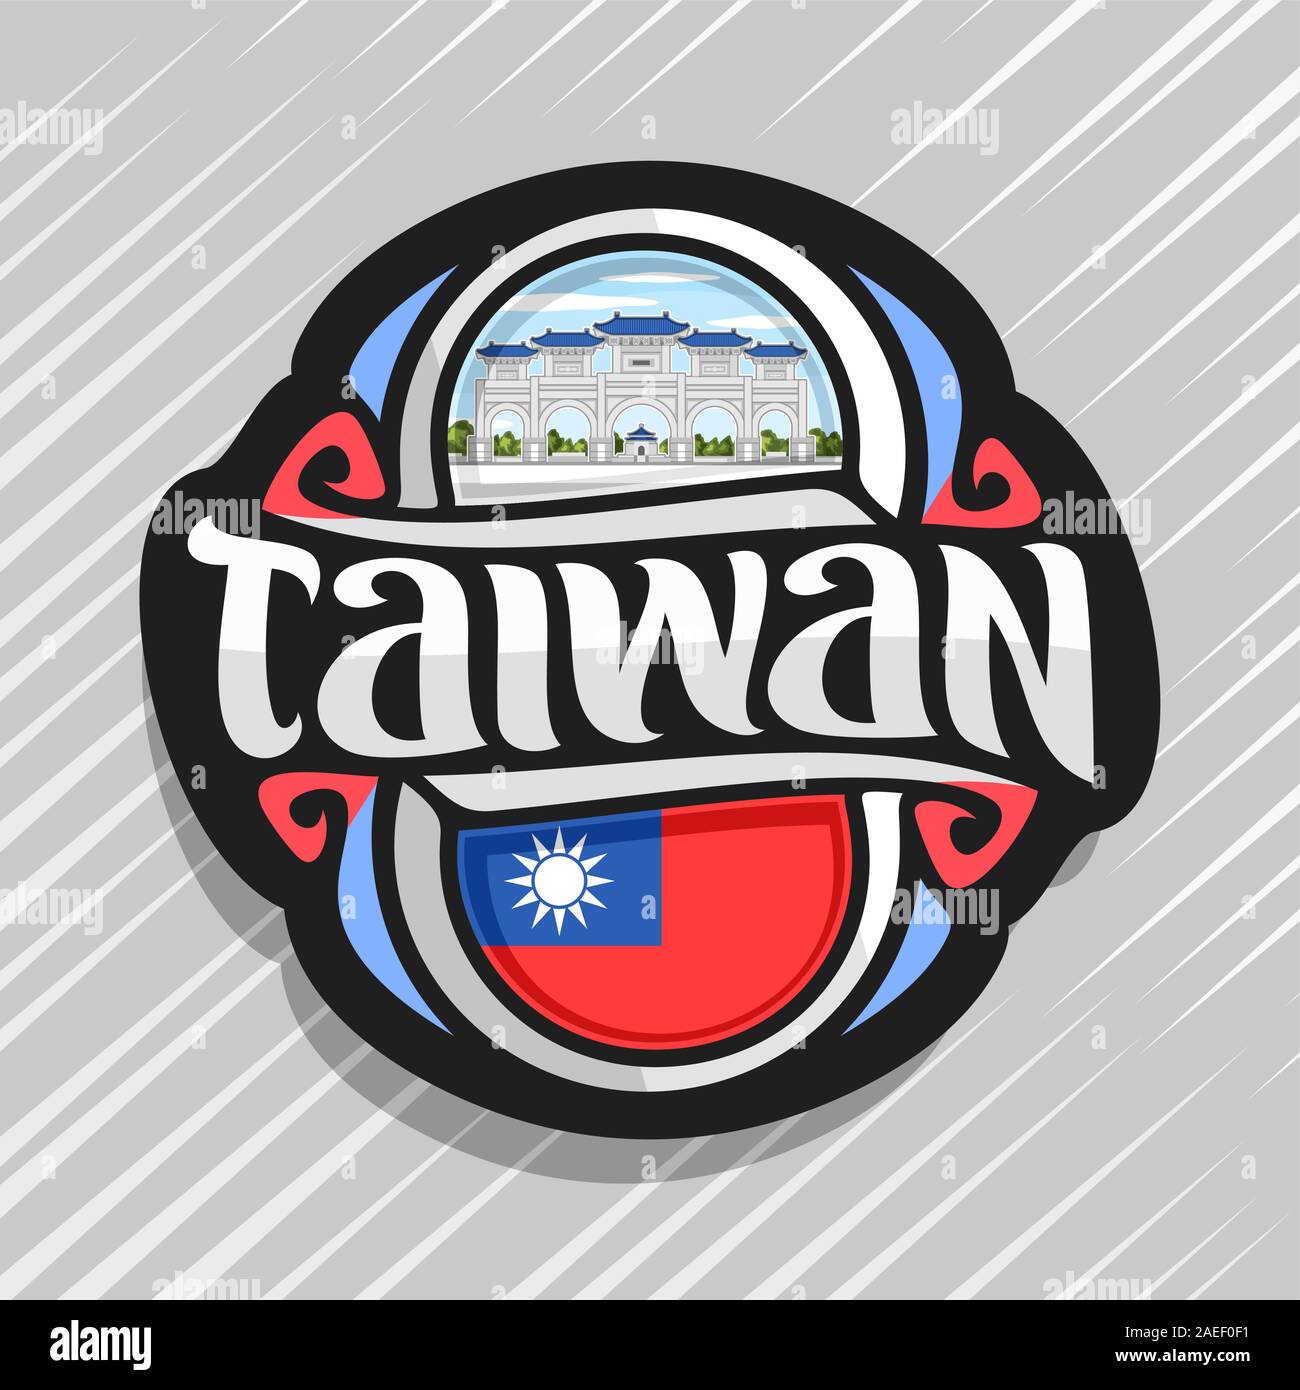 Logo Vector pour Taiwan, pays aimant frigo avec drapeau de l'État taiwanais d'origine, caractère brosse pour mot taiwan et symbole national taiwanais - Chian Illustration de Vecteur